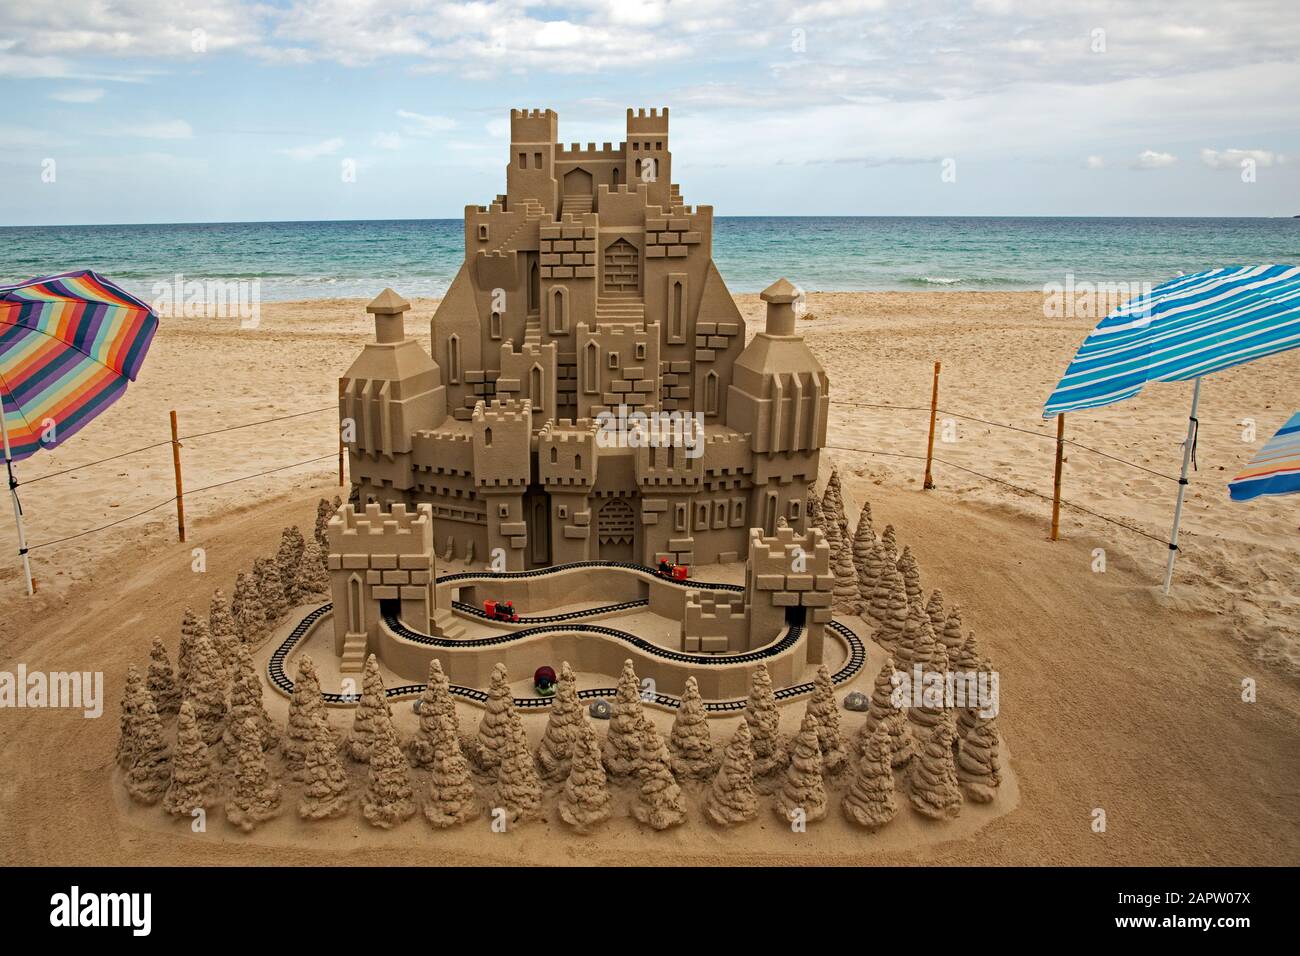 Eine Modelleisenbahn umfährt am Strand von Cala Millor, Mallorca, Spanien, eine riesige Sandburg. Stockfoto